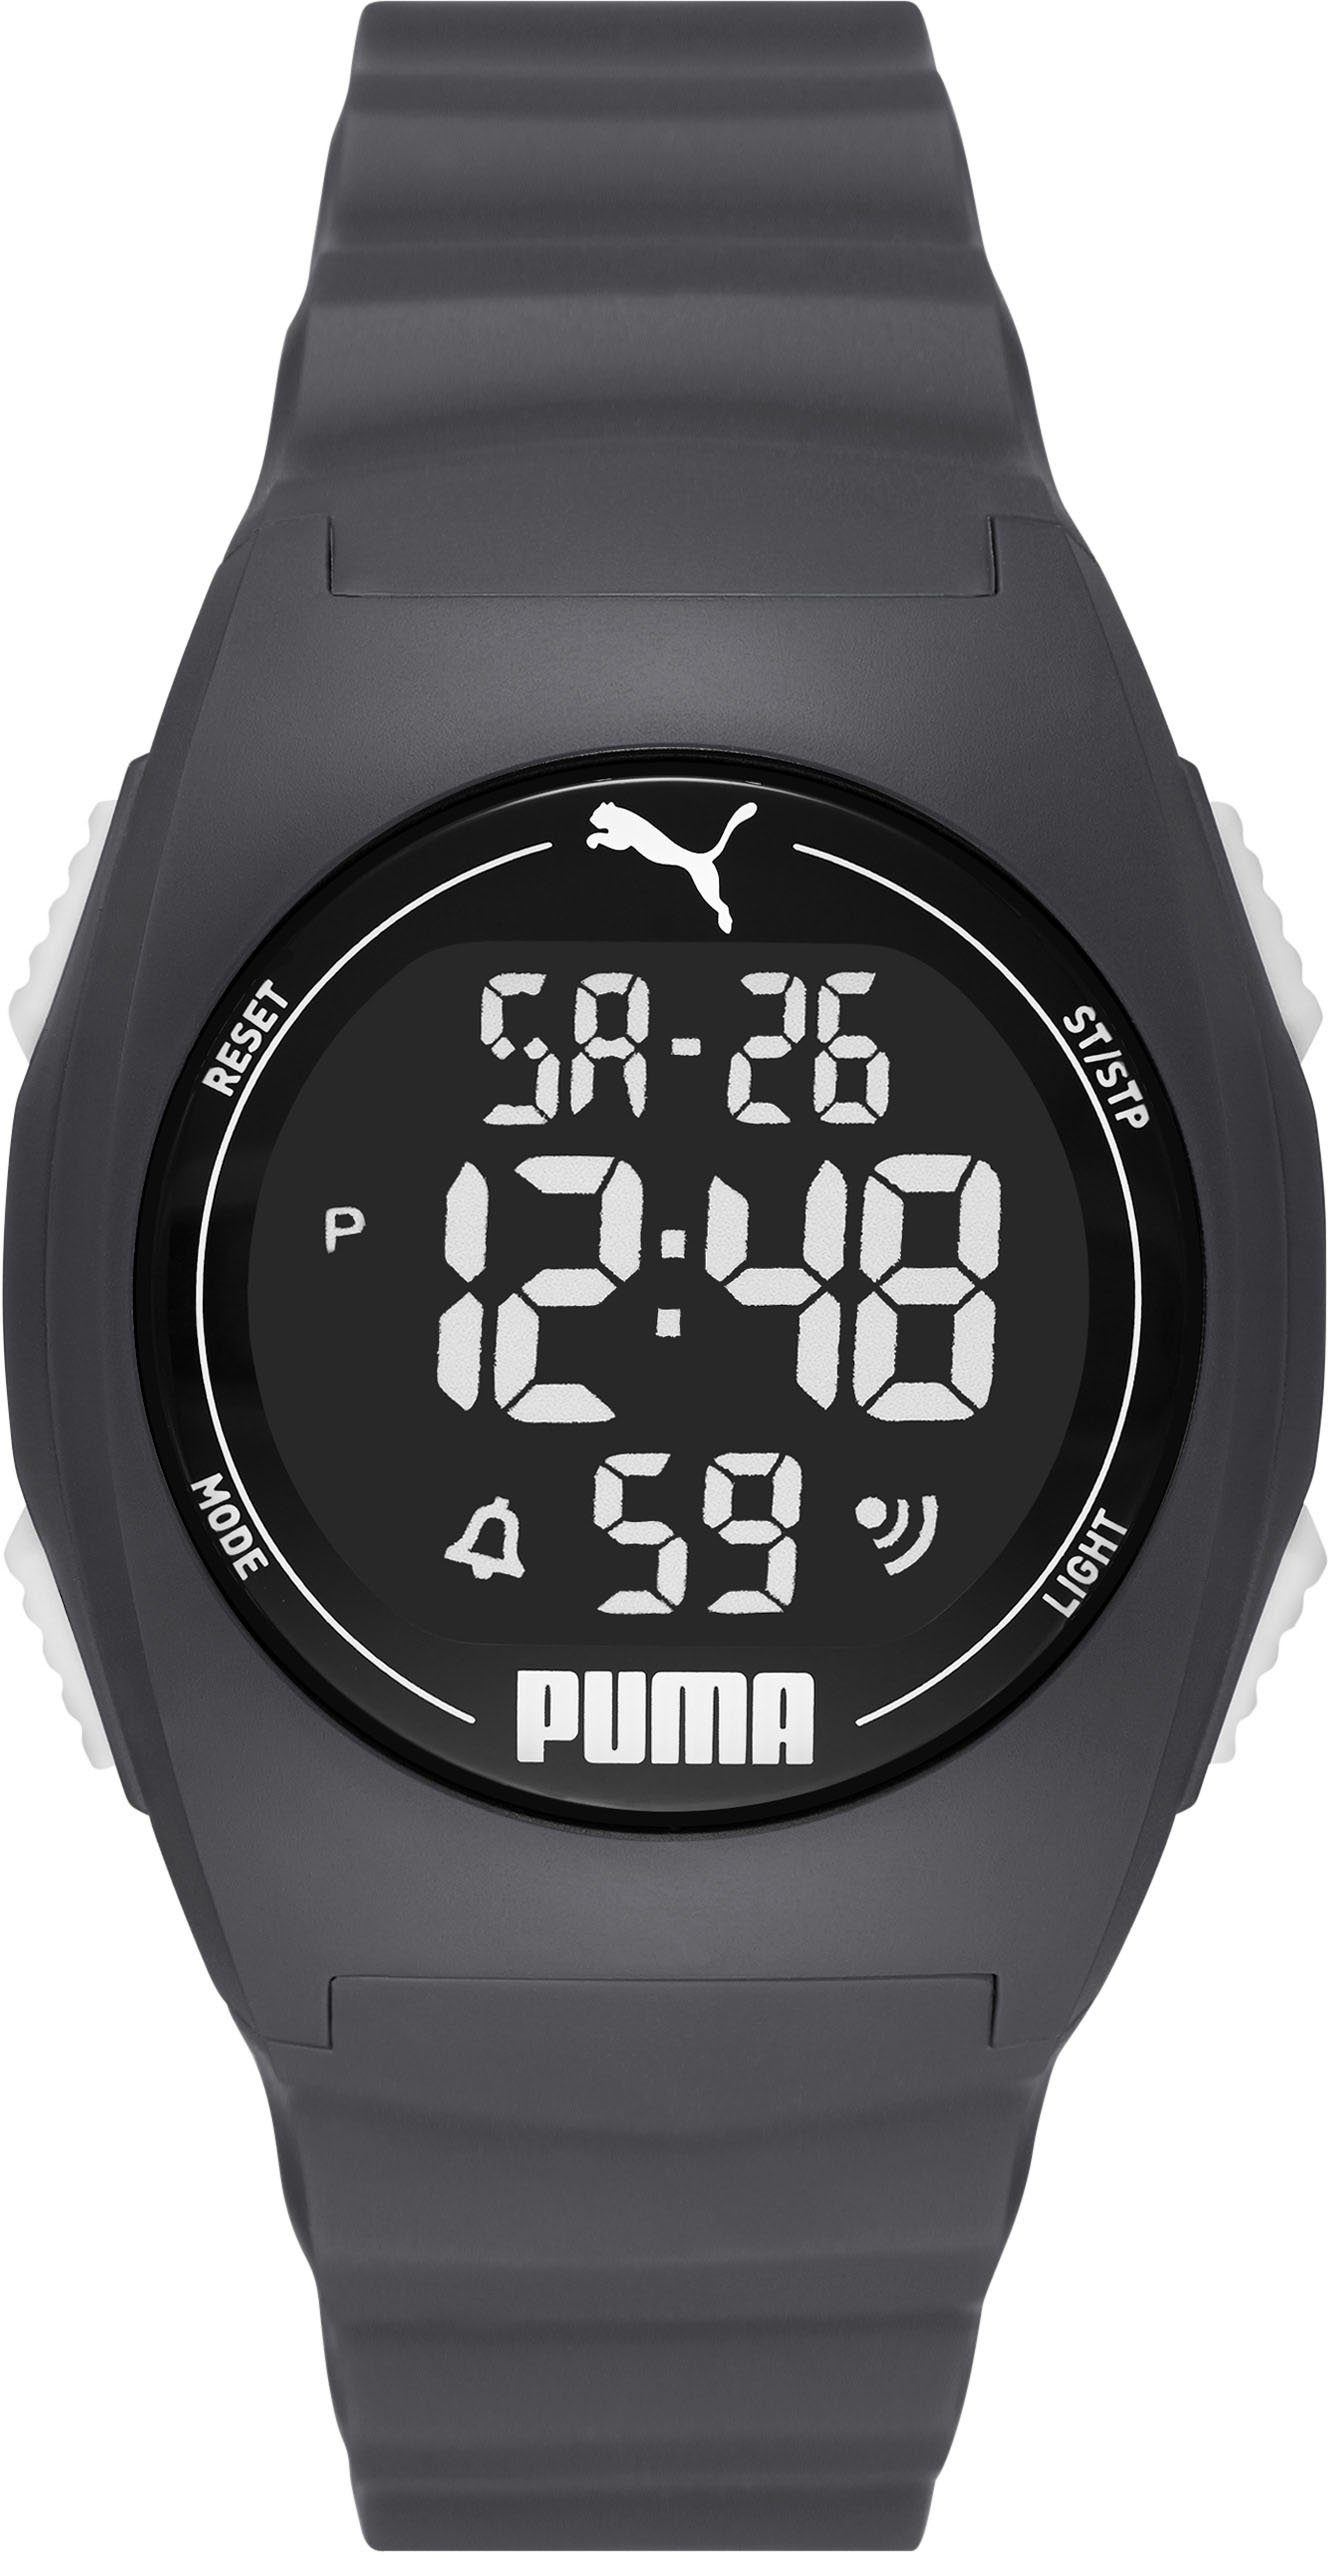 PUMA Digitaluhr »PUMA 4, P6016« online kaufen | OTTO